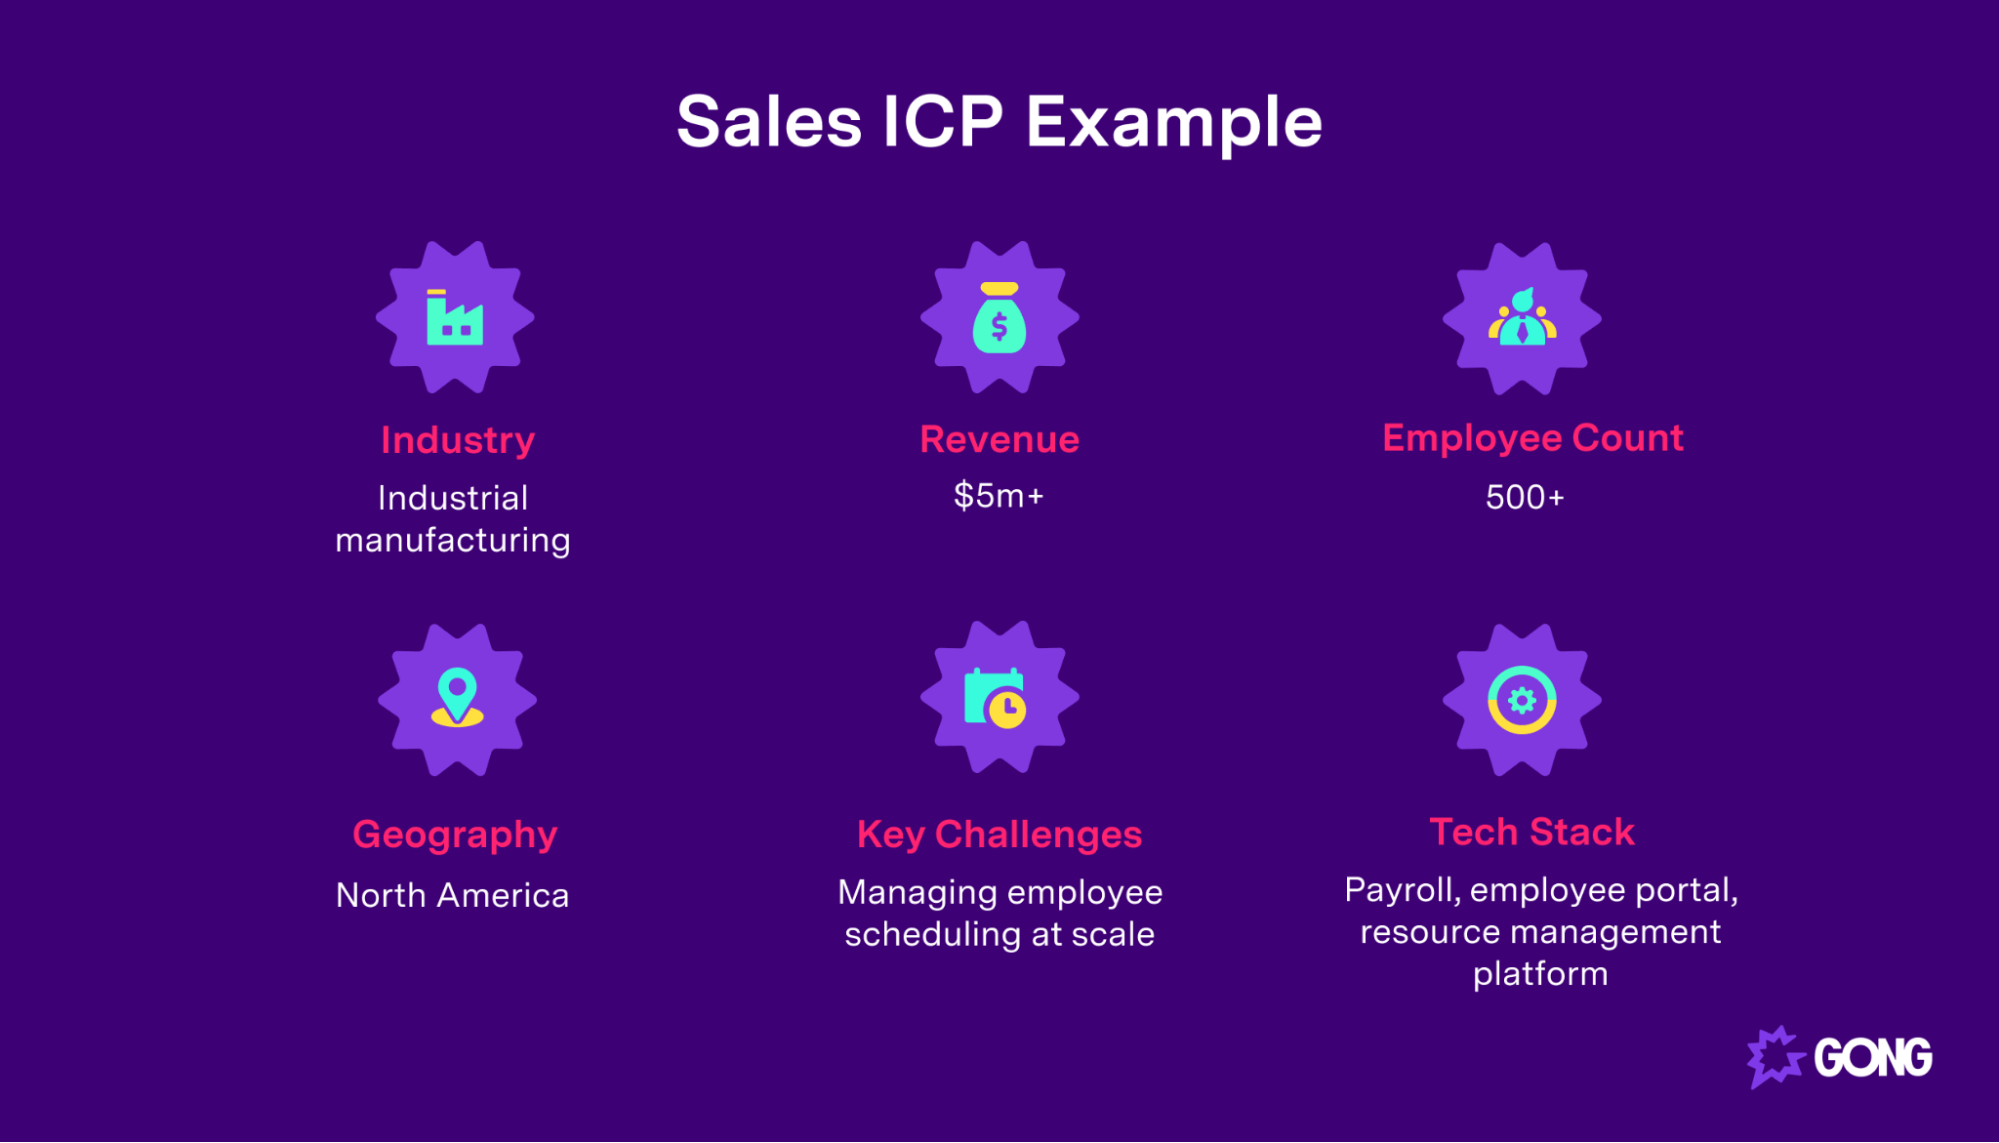 Sales ICP example